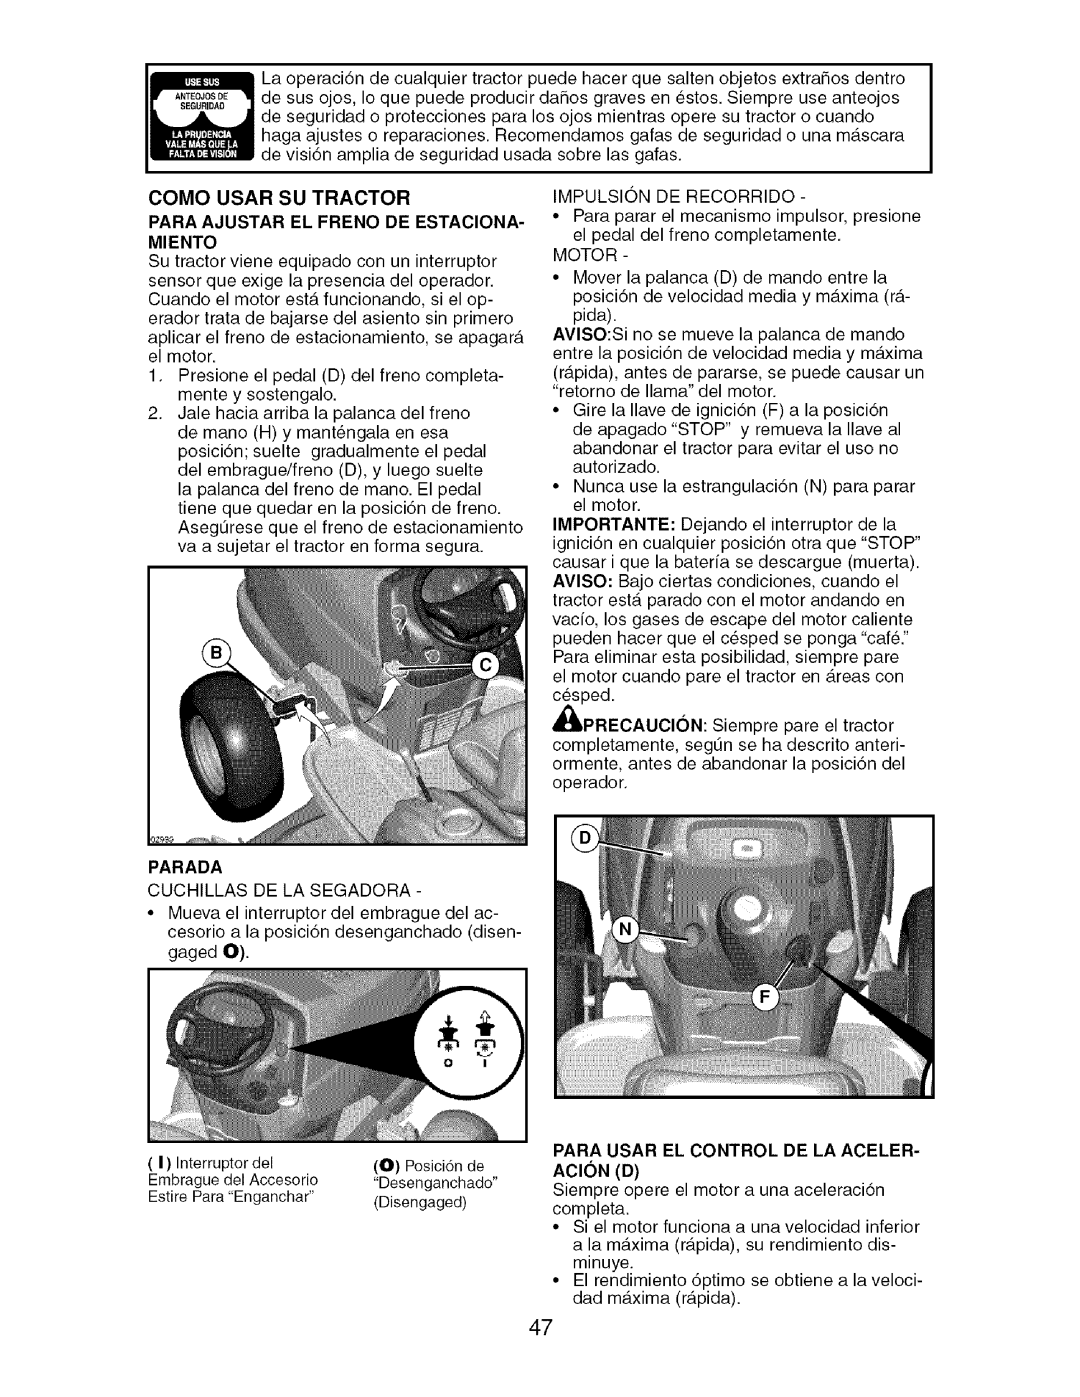 Craftsman 917.276920 Parada Cuchillas DE LA Segadora, Impulsion DE Recorrido, Motor, Para Usar EL Control DE LA Aceler 